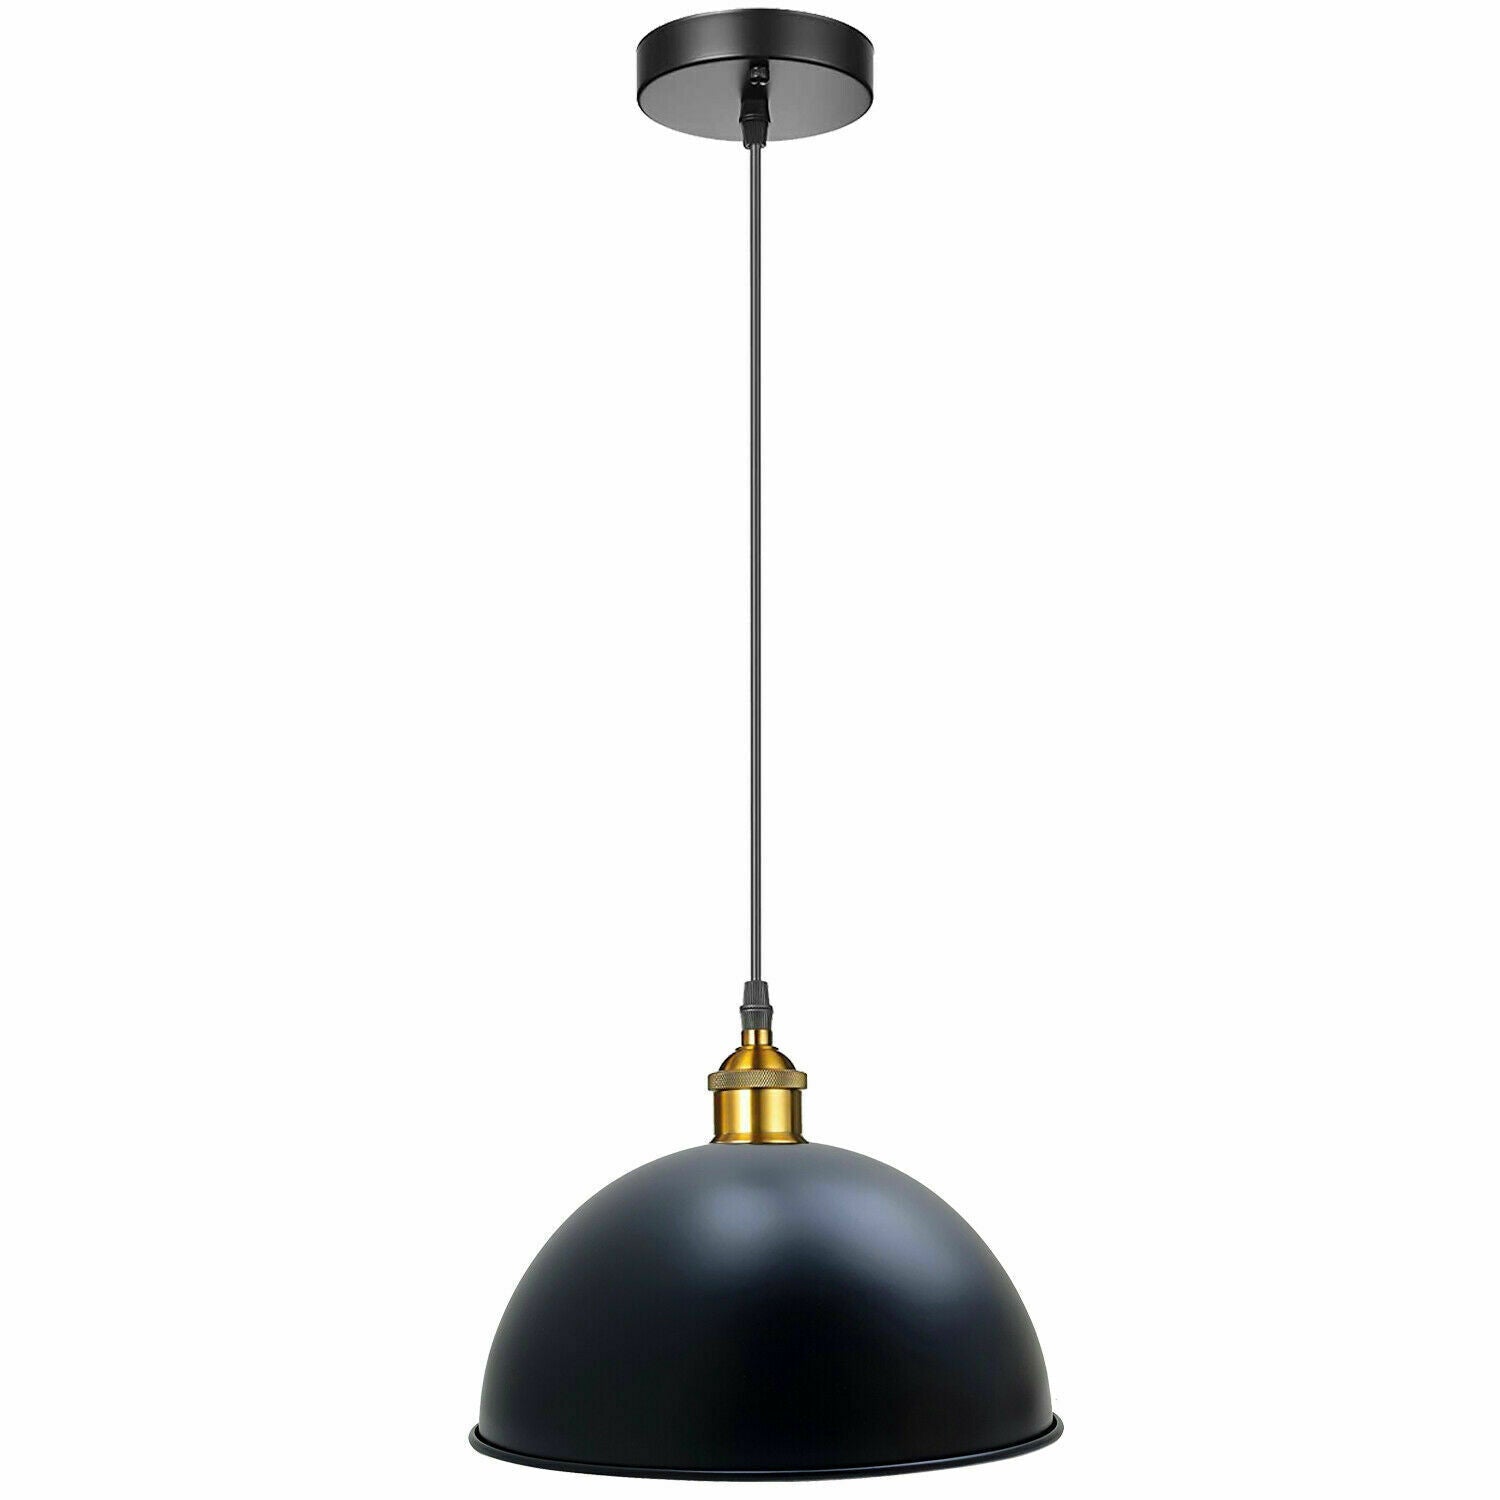 40cm Black Metal Dome Pendant Light~1845 - LEDSone UK Ltd